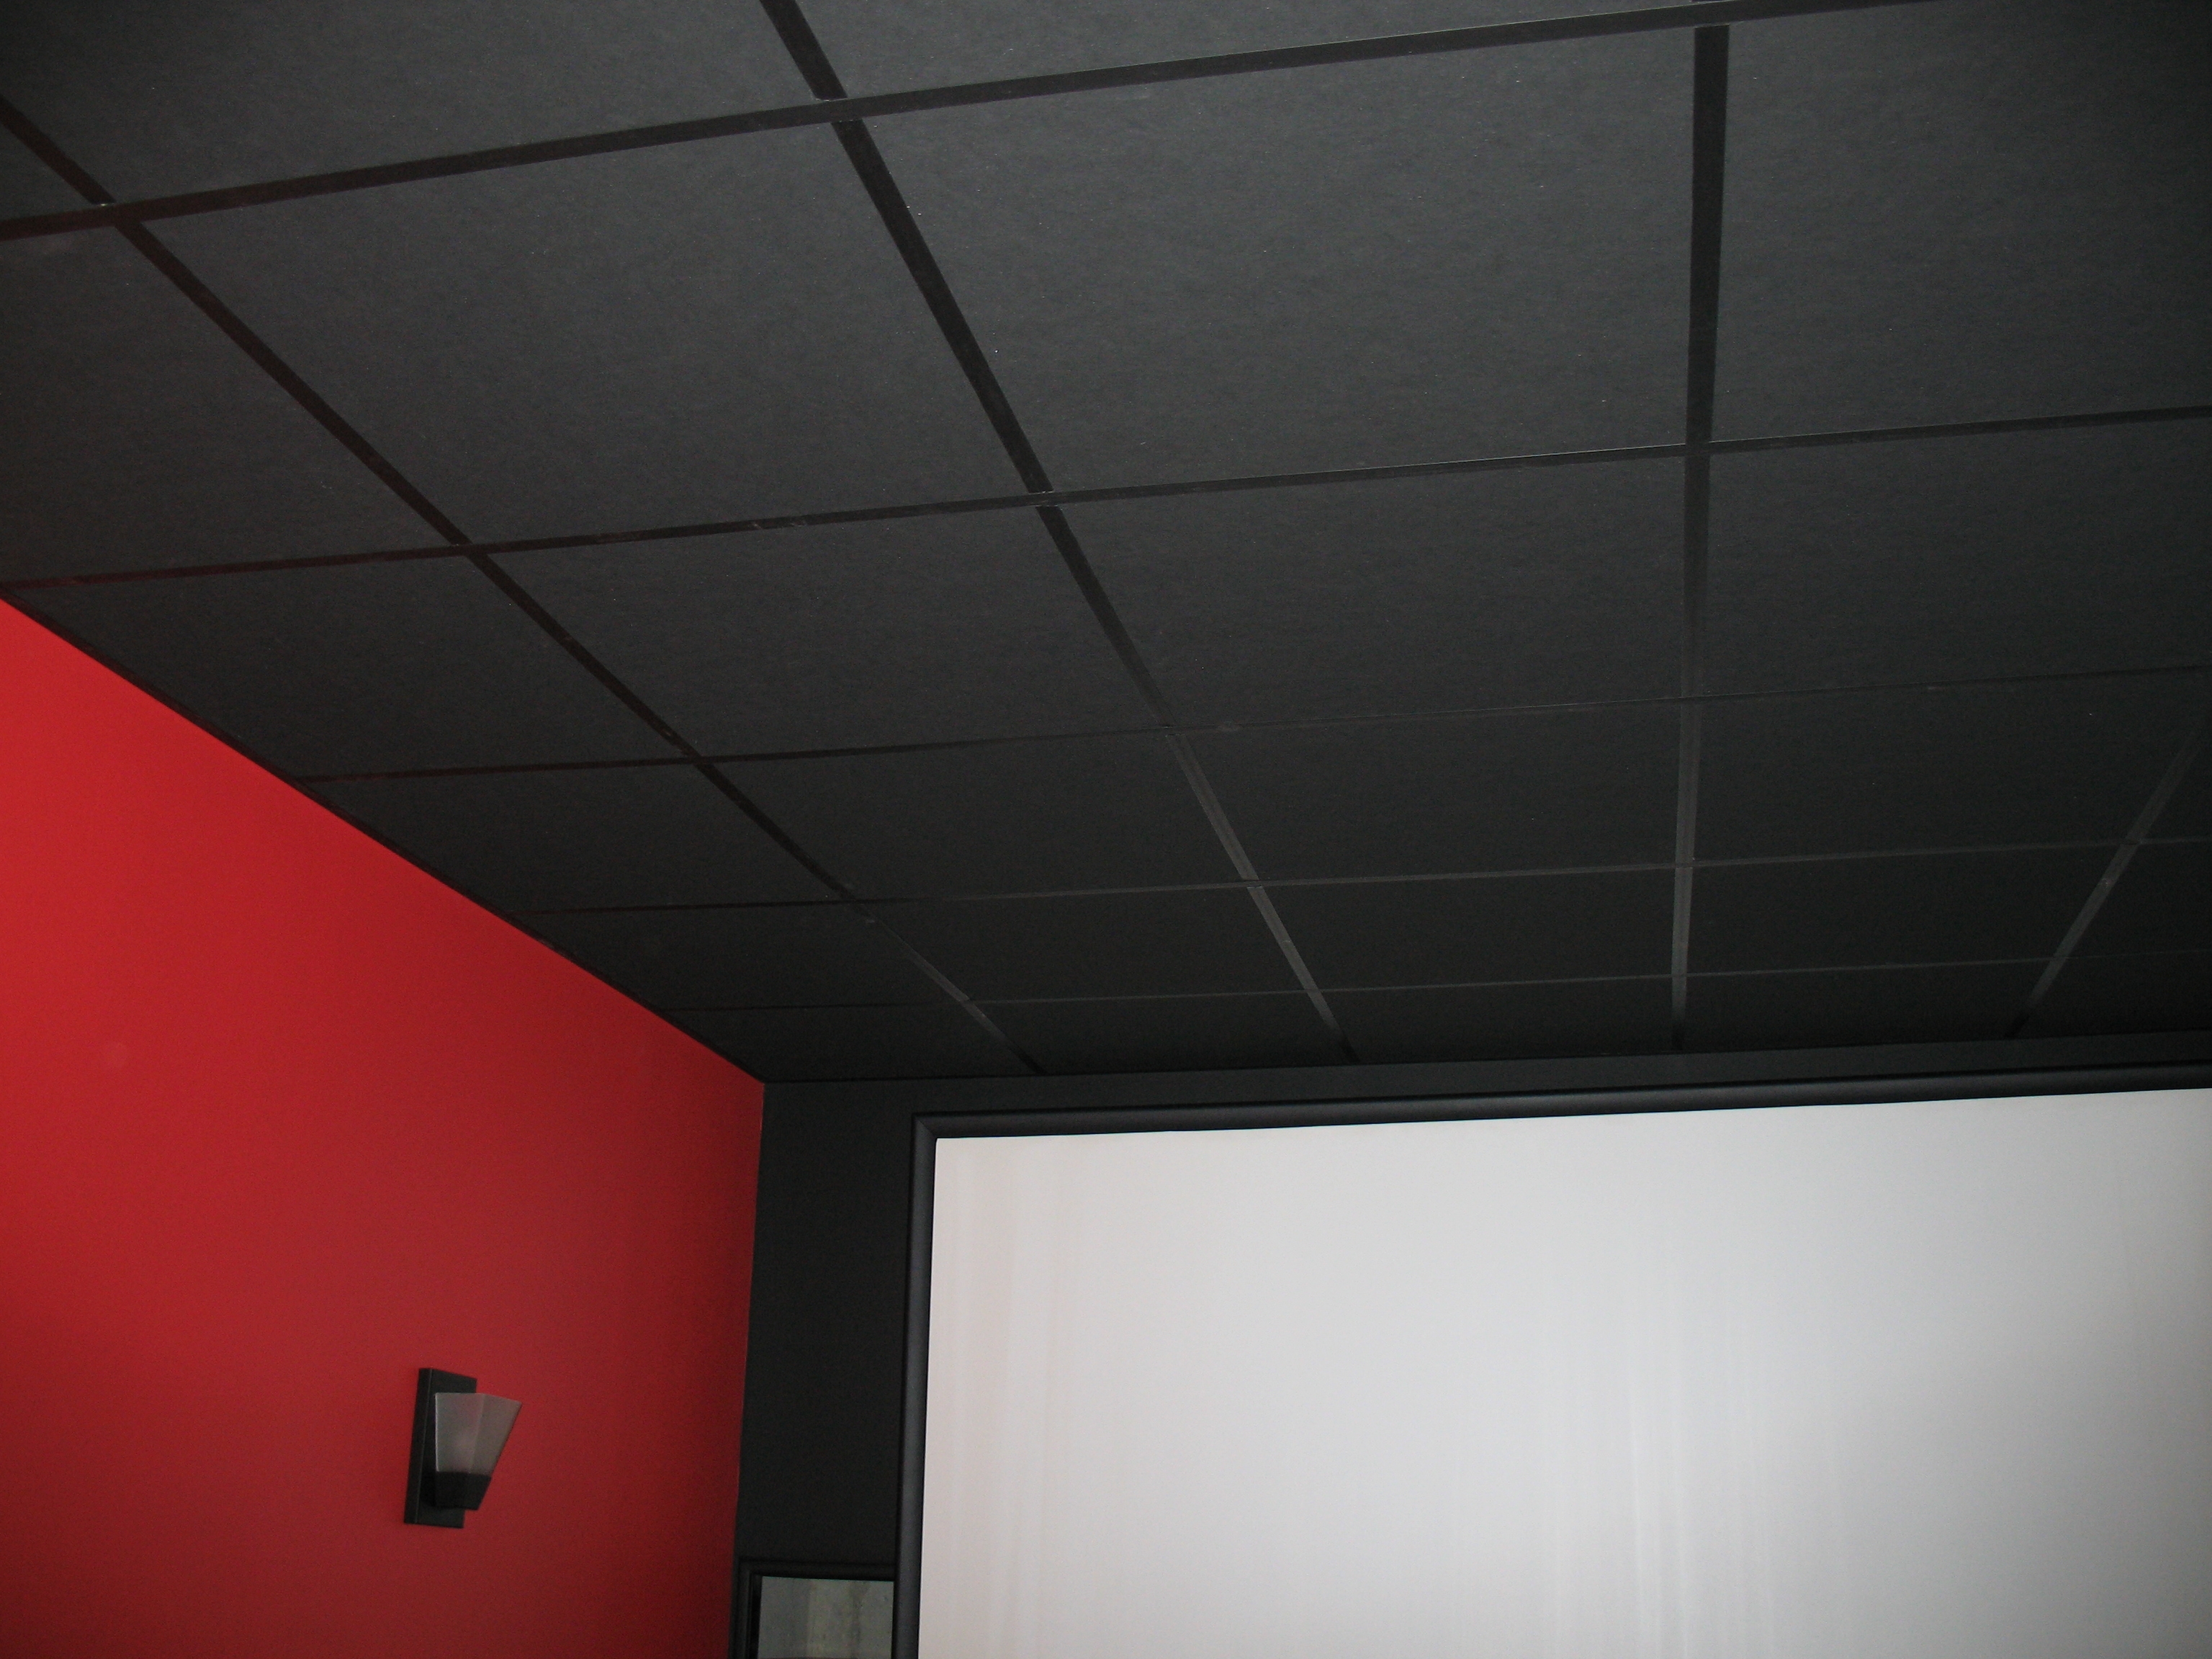 2x4 Black Acoustic Ceiling Tiles 2×4 Black Acoustic Ceiling Tiles black ceiling tiles home tiles 3072 X 2304